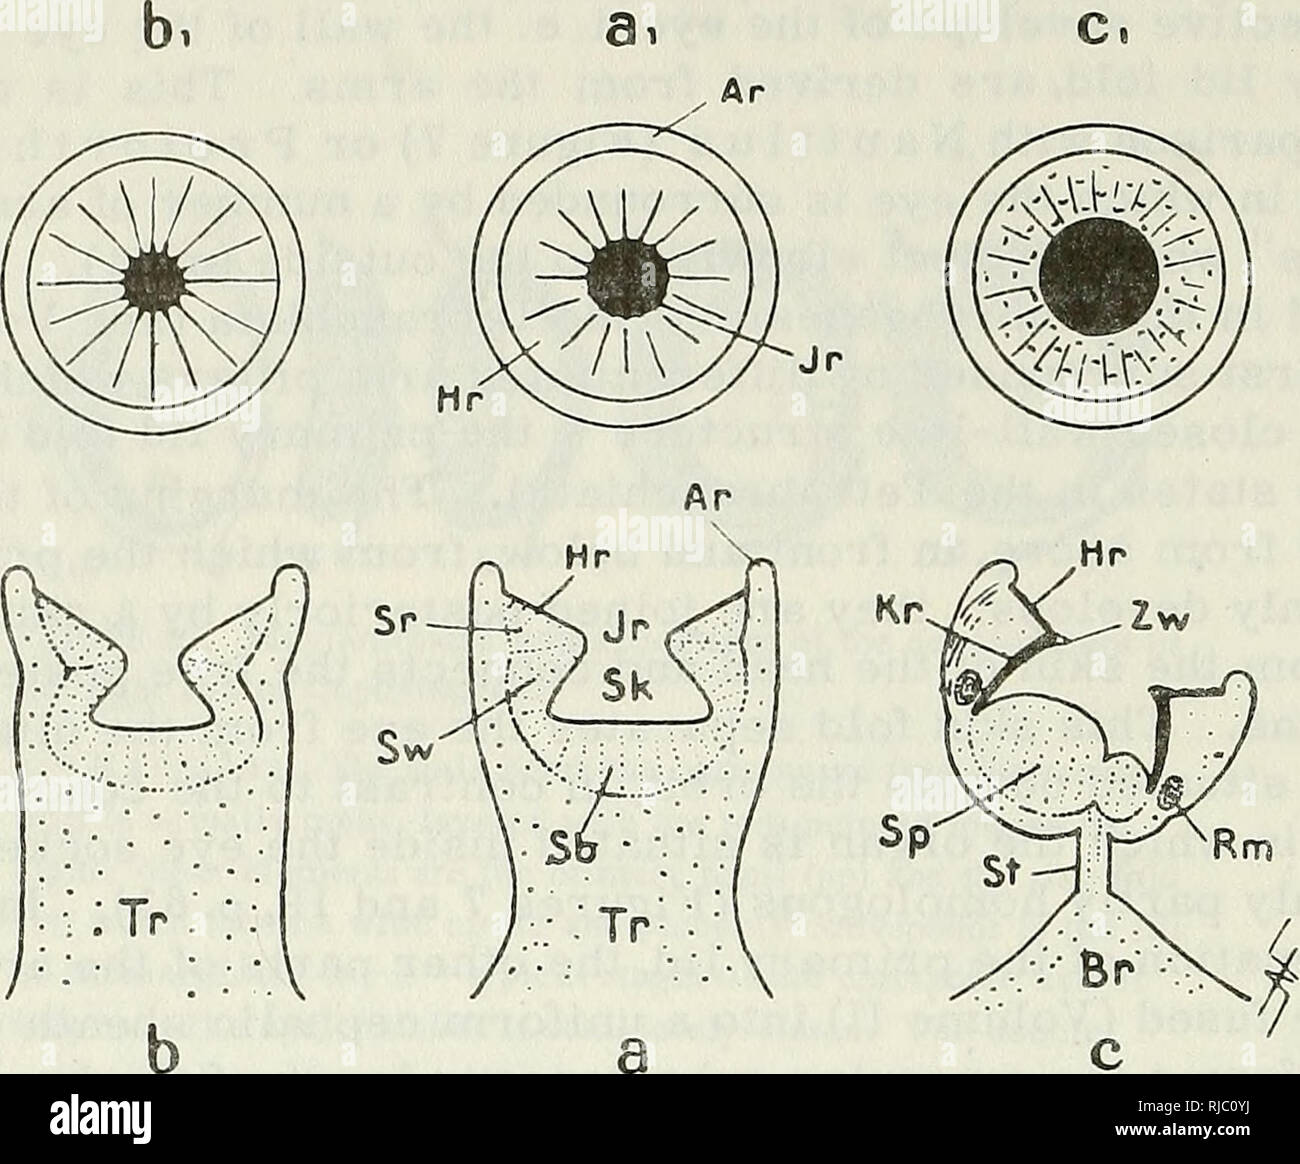 . Des céphalopodes. Des céphalopodes. La figure 29. Morphologie des drageons de Dibranchiata. La section médiane (ci-dessous) et supérieure (voir ci-dessus) de drageons typique ofProtodibranchus Protodecapus (a), (b) et (c) Protoctopus : AR - anneau marginal ; Hr - anneau de préhension ; Jr - marge de chambre ; Tr - support ; Sr - couche de la paroi musculaire anneau saisissant ; SW - couche musculaire de la paroi latérale ; SB - couche musculaire de la chambre en bas, Sp - sucer pad ; St - vitre ; Br - tampon basale ; Rm - muscle circulaire ; Kr - chambre chitineuses ring ; ZW - dents chitineuses sur la marge de la chambre. [Il y a semble-t-il une erreur dans l'étiquetage i Banque D'Images